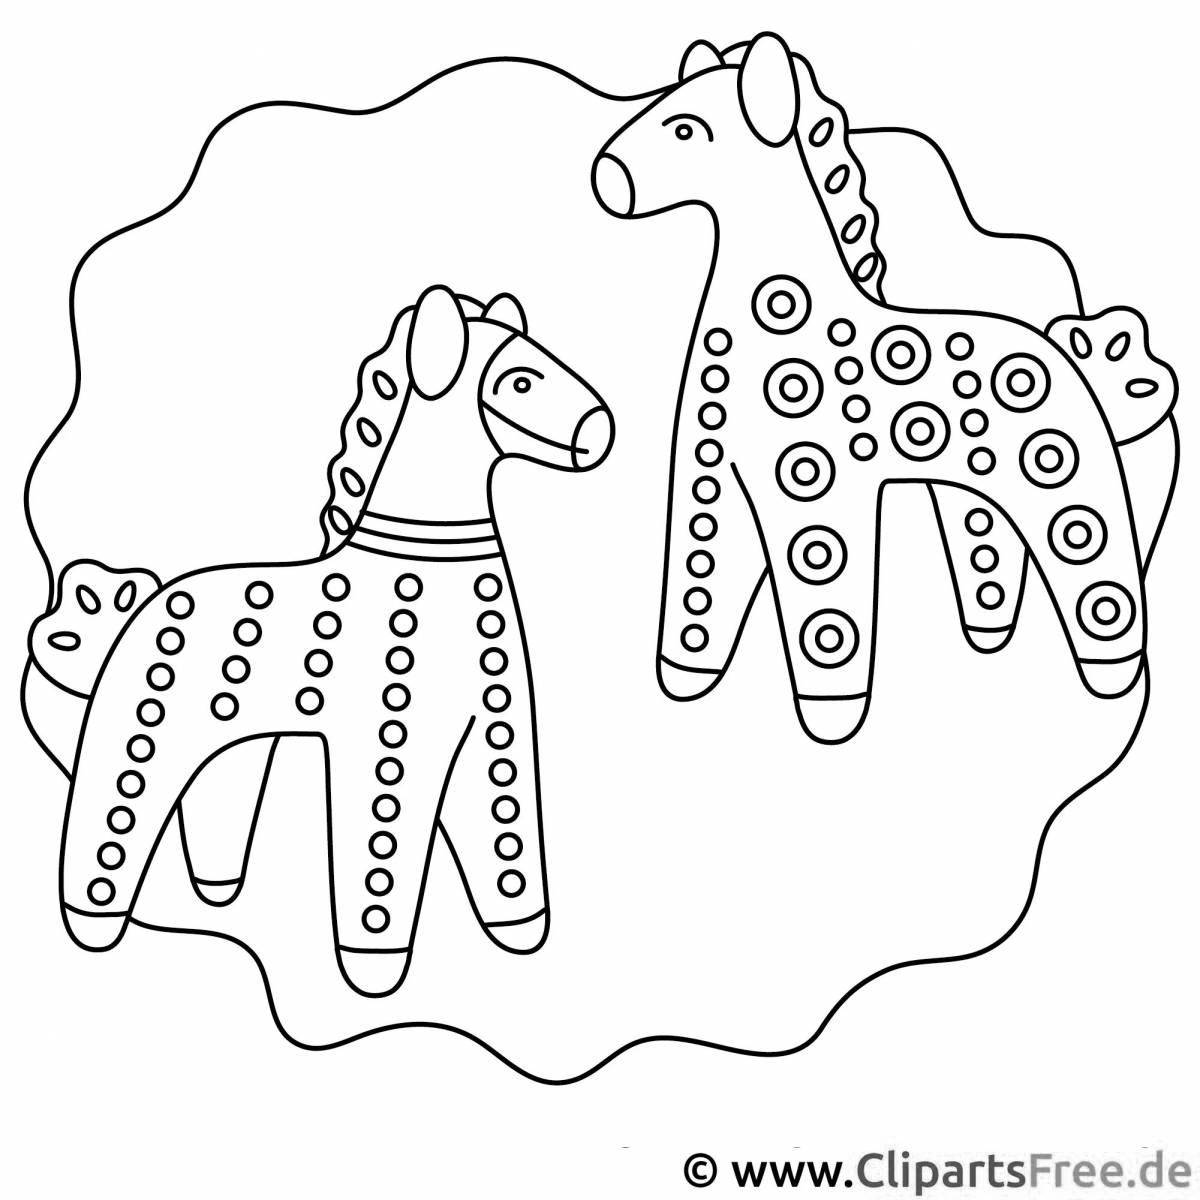 Раскраска причудливая лошадка для дымковской игрушки